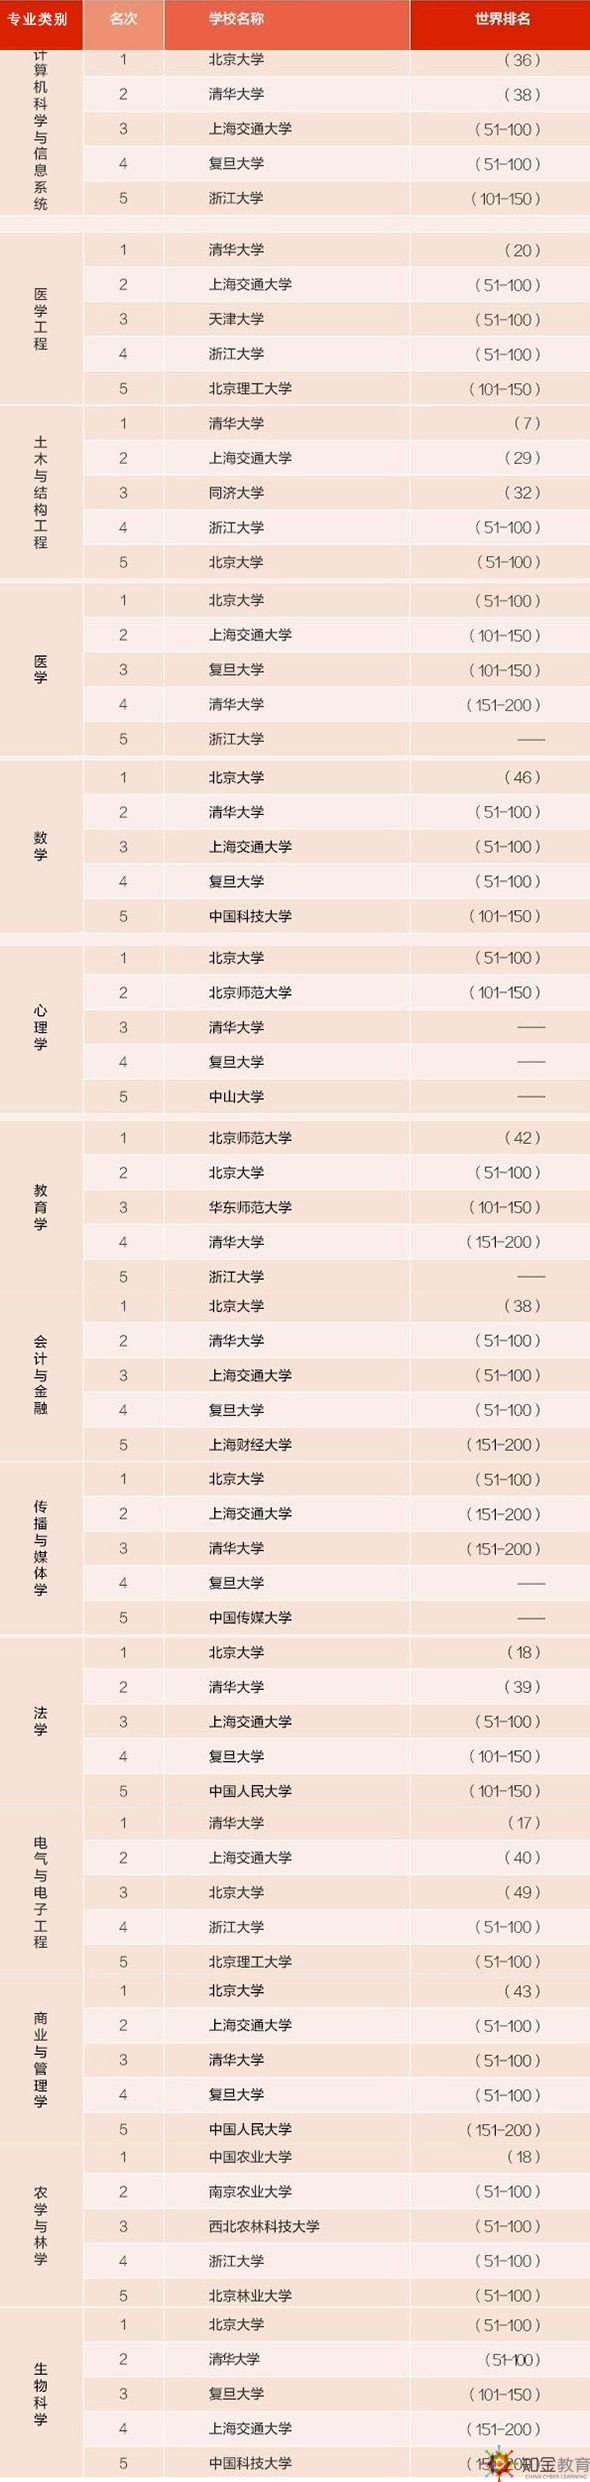 中国大学面积排行榜_中国大学占地面积排行榜 官方数据版